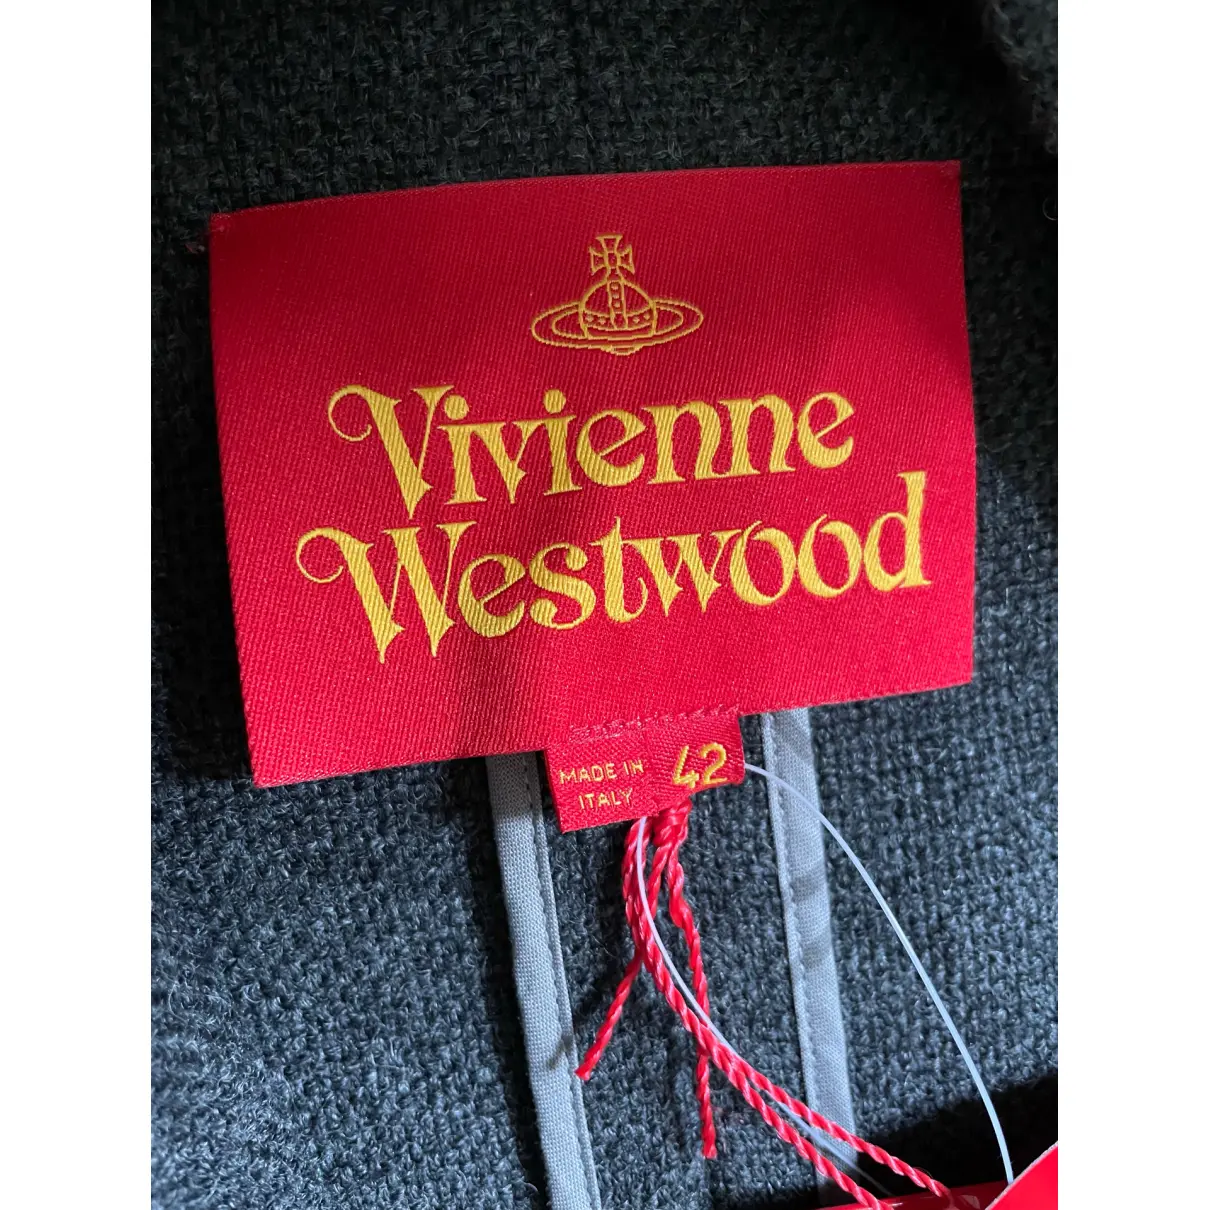 Wool coat Vivienne Westwood